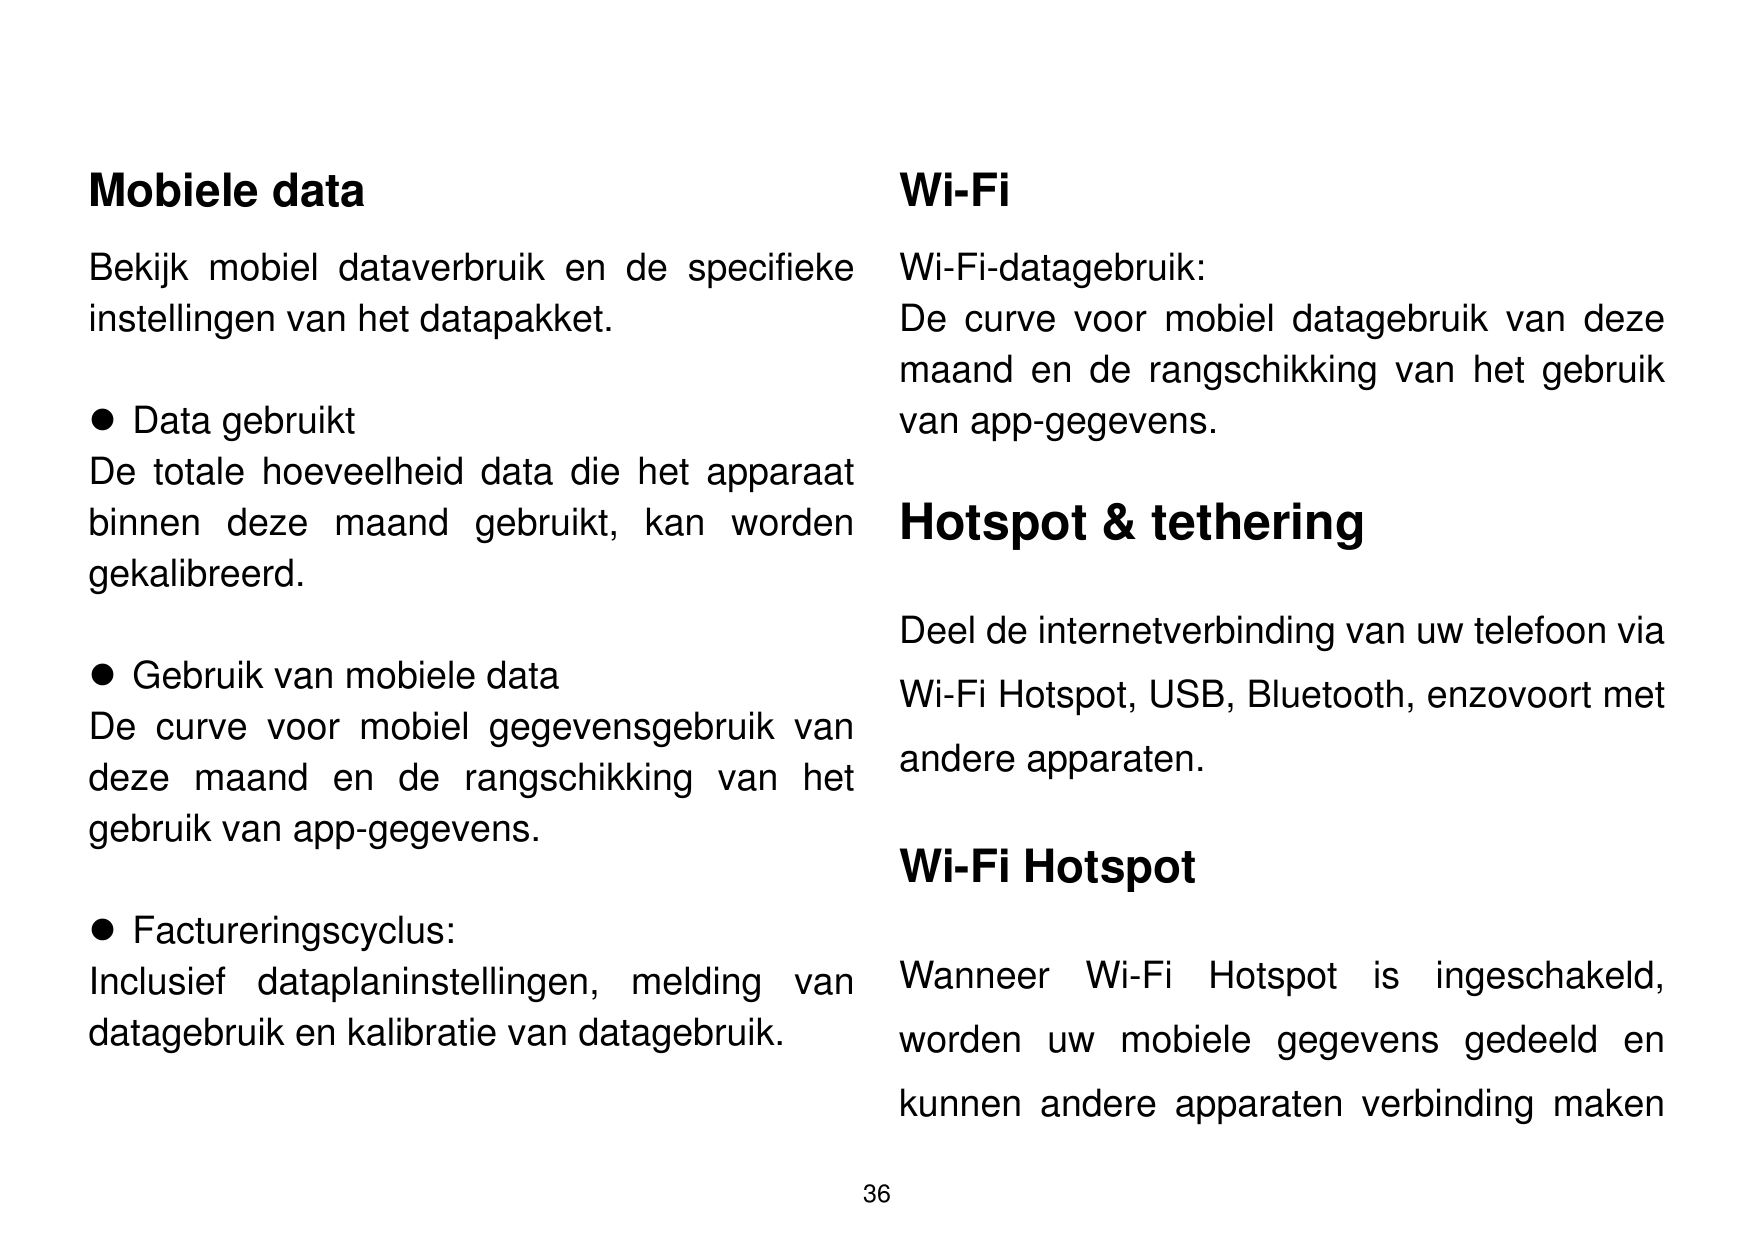 Mobiele dataWi-FiBekijk mobiel dataverbruik en de specifiekeinstellingen van het datapakket.Wi-Fi-datagebruik:De curve voor mobi